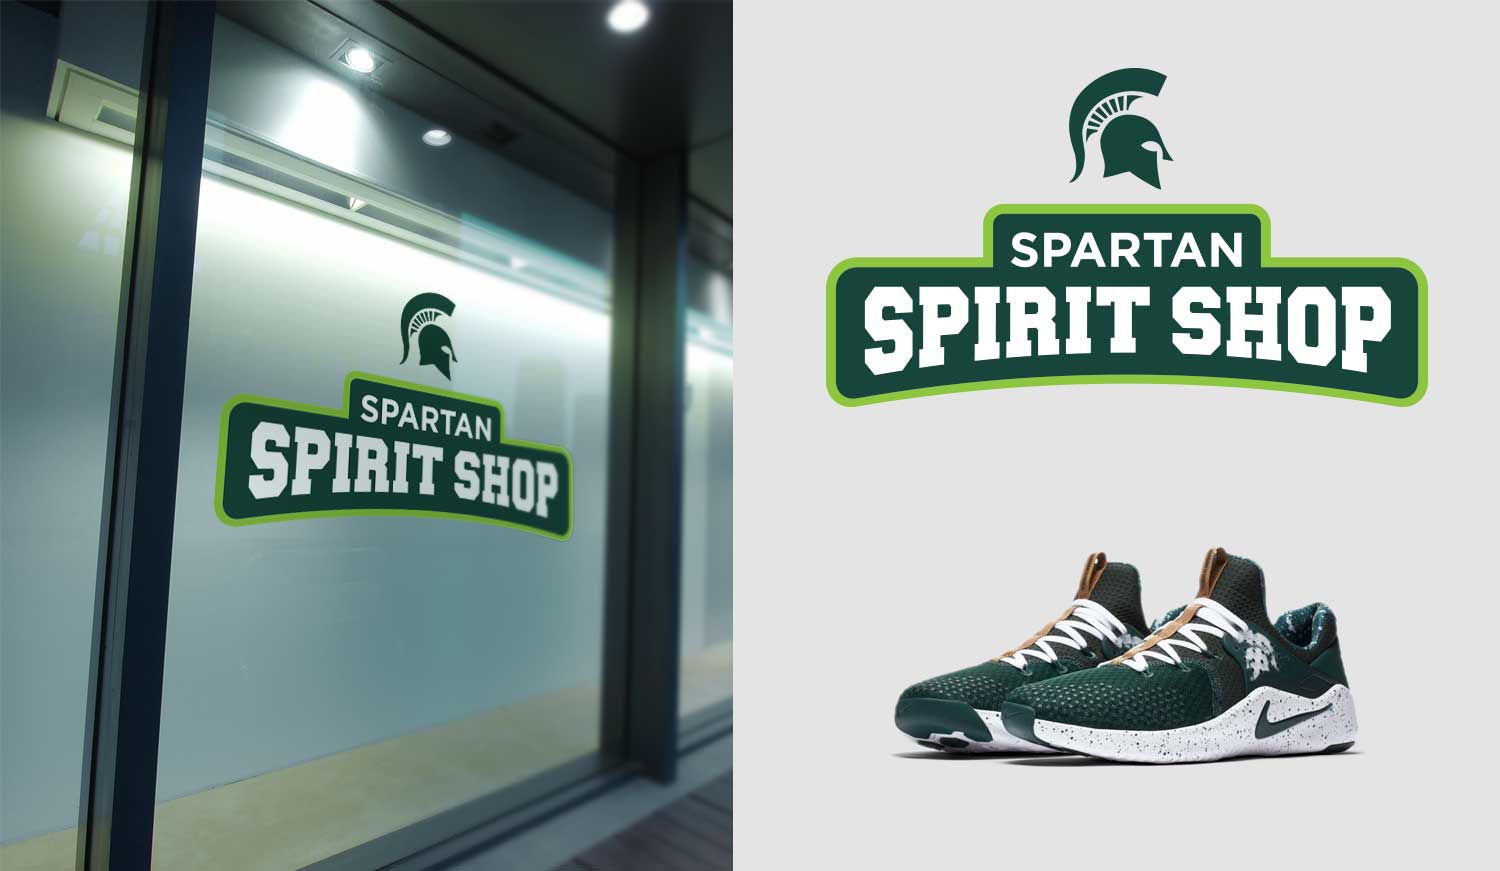 Spartan Spirit Shop